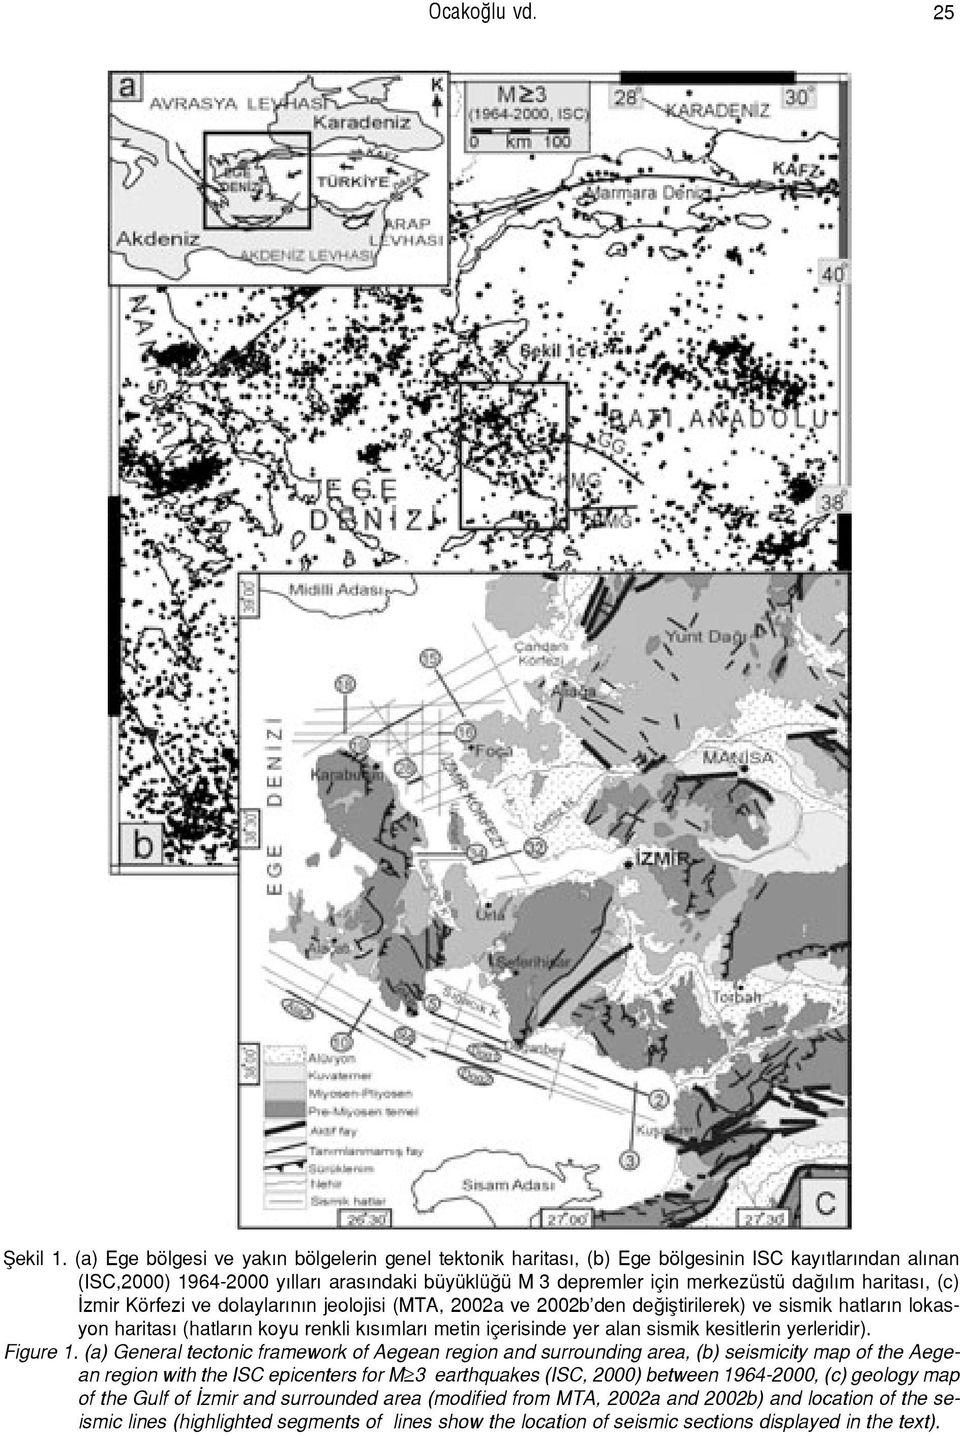 (c) zmir Körfezi ve dolaylar n n jeolojisi (MTA, 2002a ve 2002b den de ifltirilerek) ve sismik hatlar n lokasyon haritas (hatlar n koyu renkli k s mlar metin içerisinde yer alan sismik kesitlerin